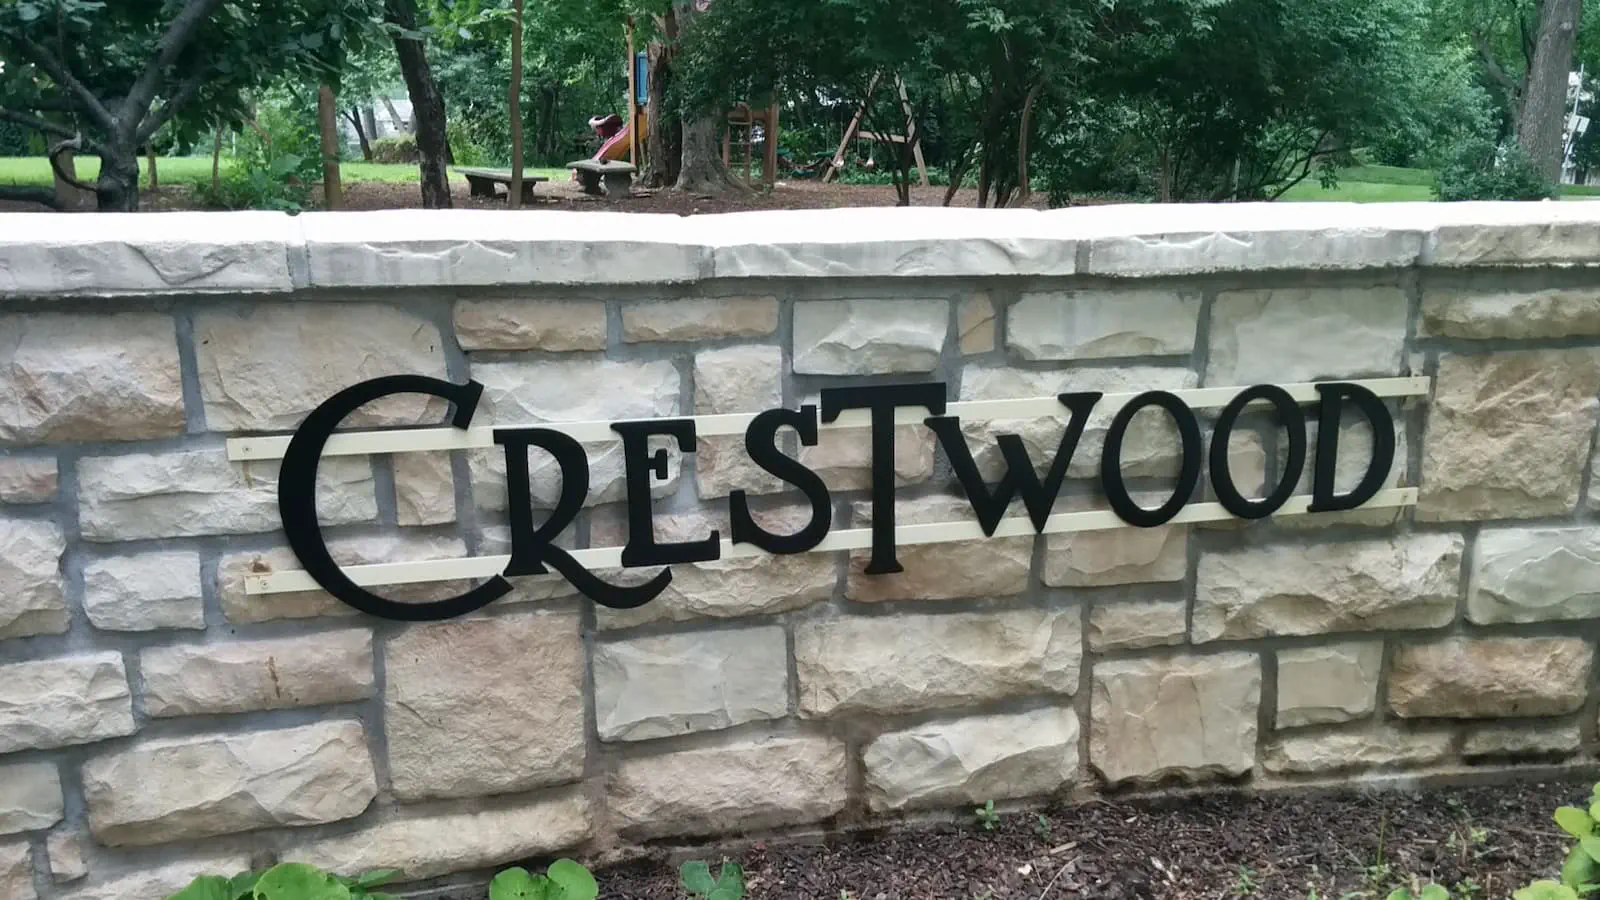 Crestwood neighborhood sign